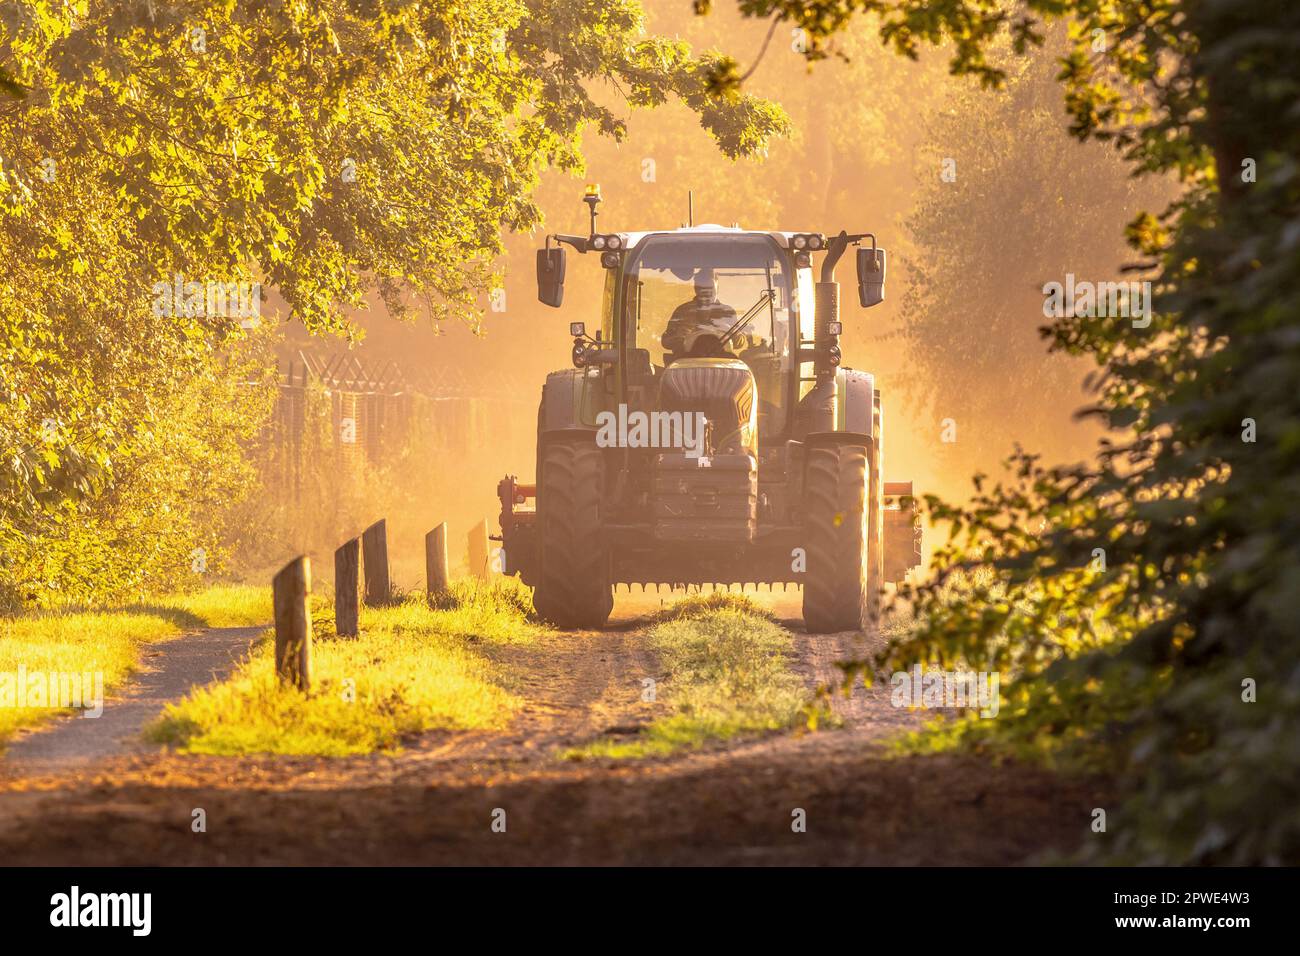 Traktor im goldenen Sonnenaufgang, trübes Licht. Landwirtschaftliches Fahrzeug auf unbefestigter Straße am Morgen. Drenthe Niederlande. Stockfoto